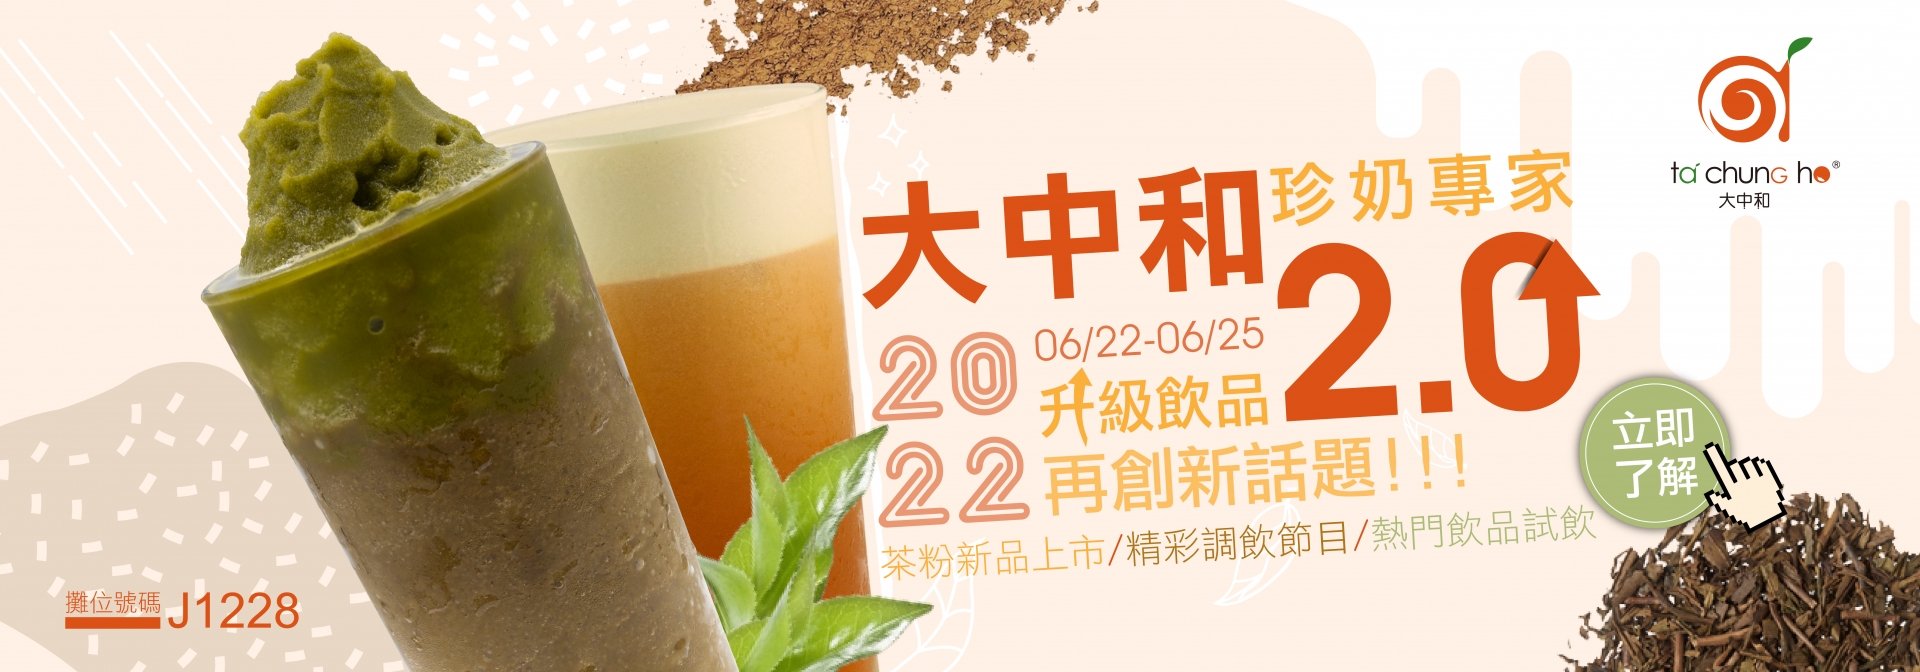 【2022 台北食品展】飲品大升級!再創新話題!